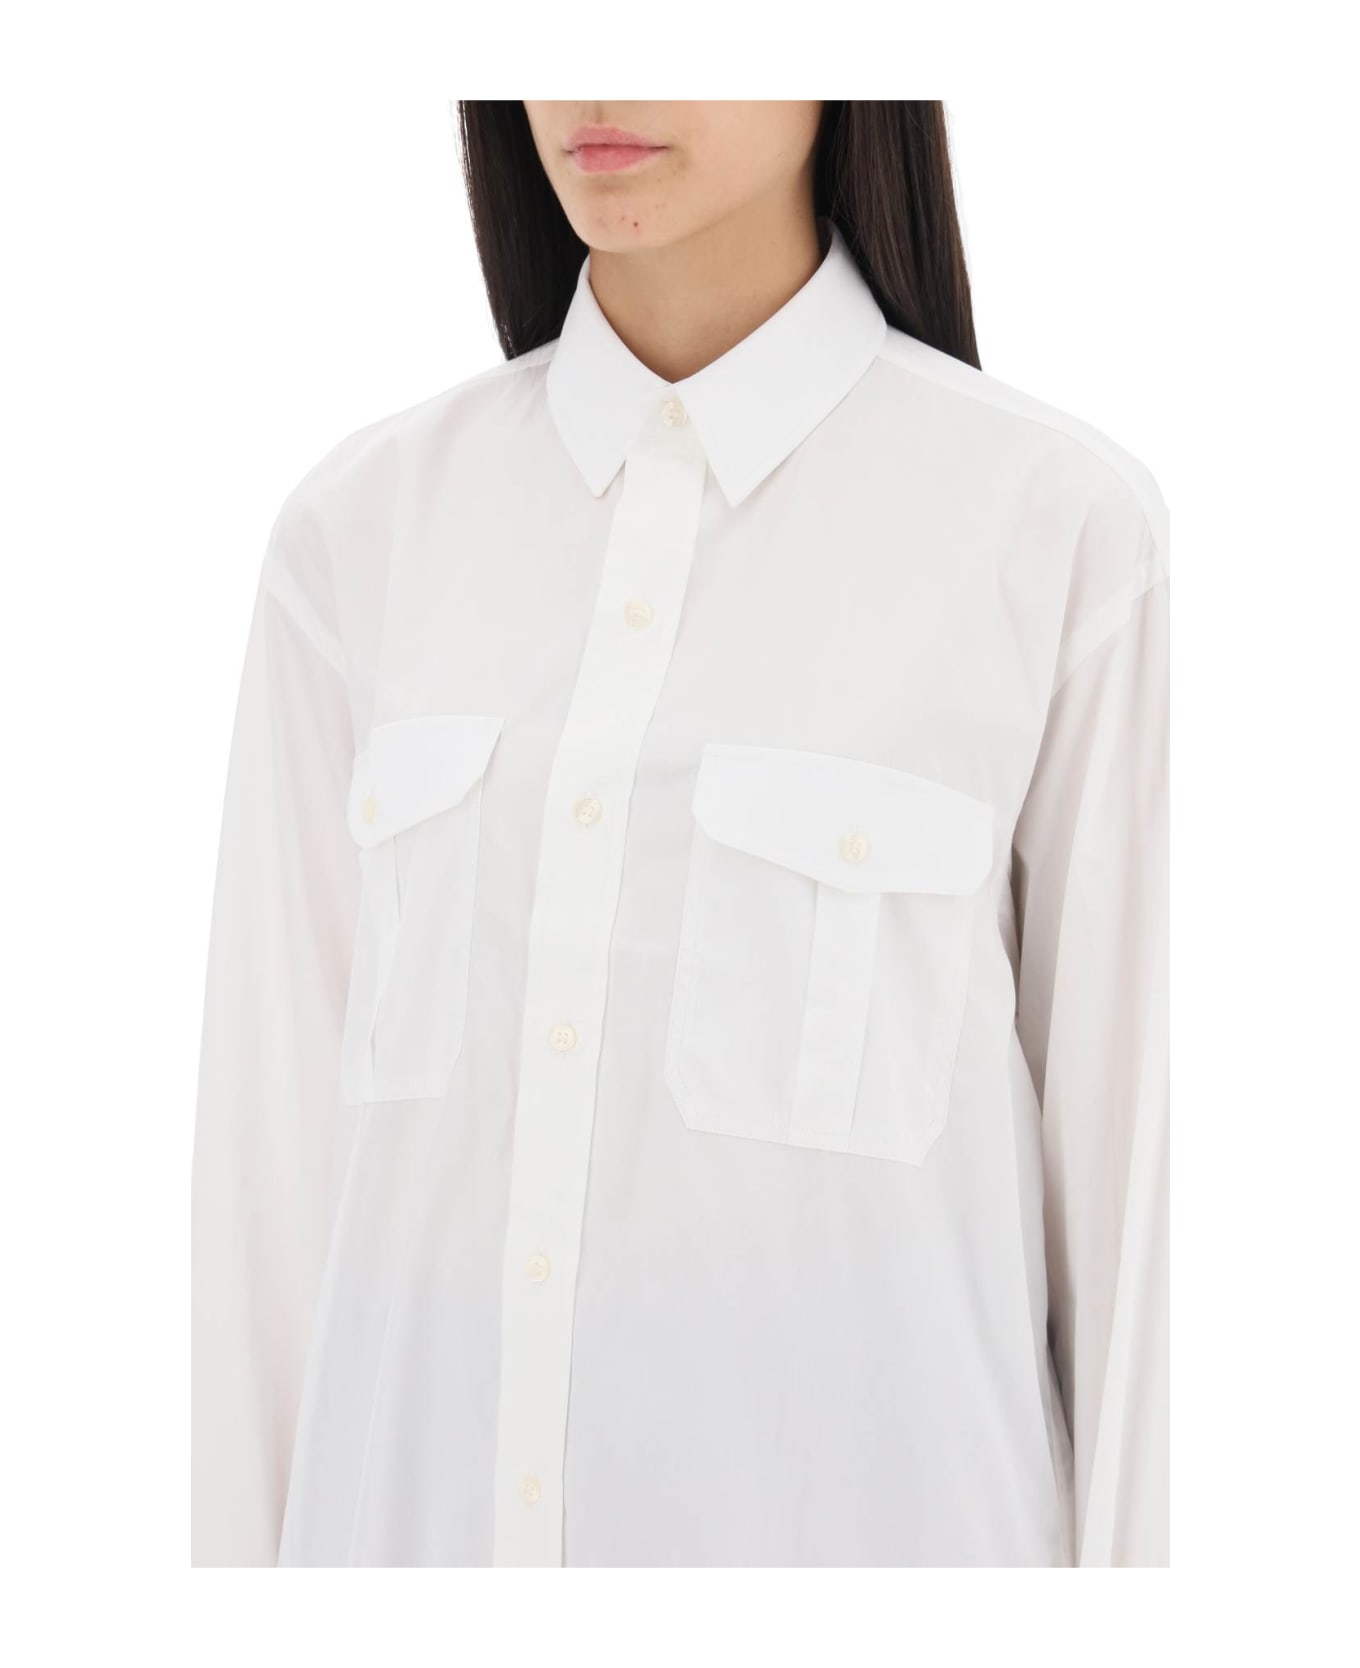 WARDROBE.NYC Maxi Shirt In Cotton Batista - WHITE (White)